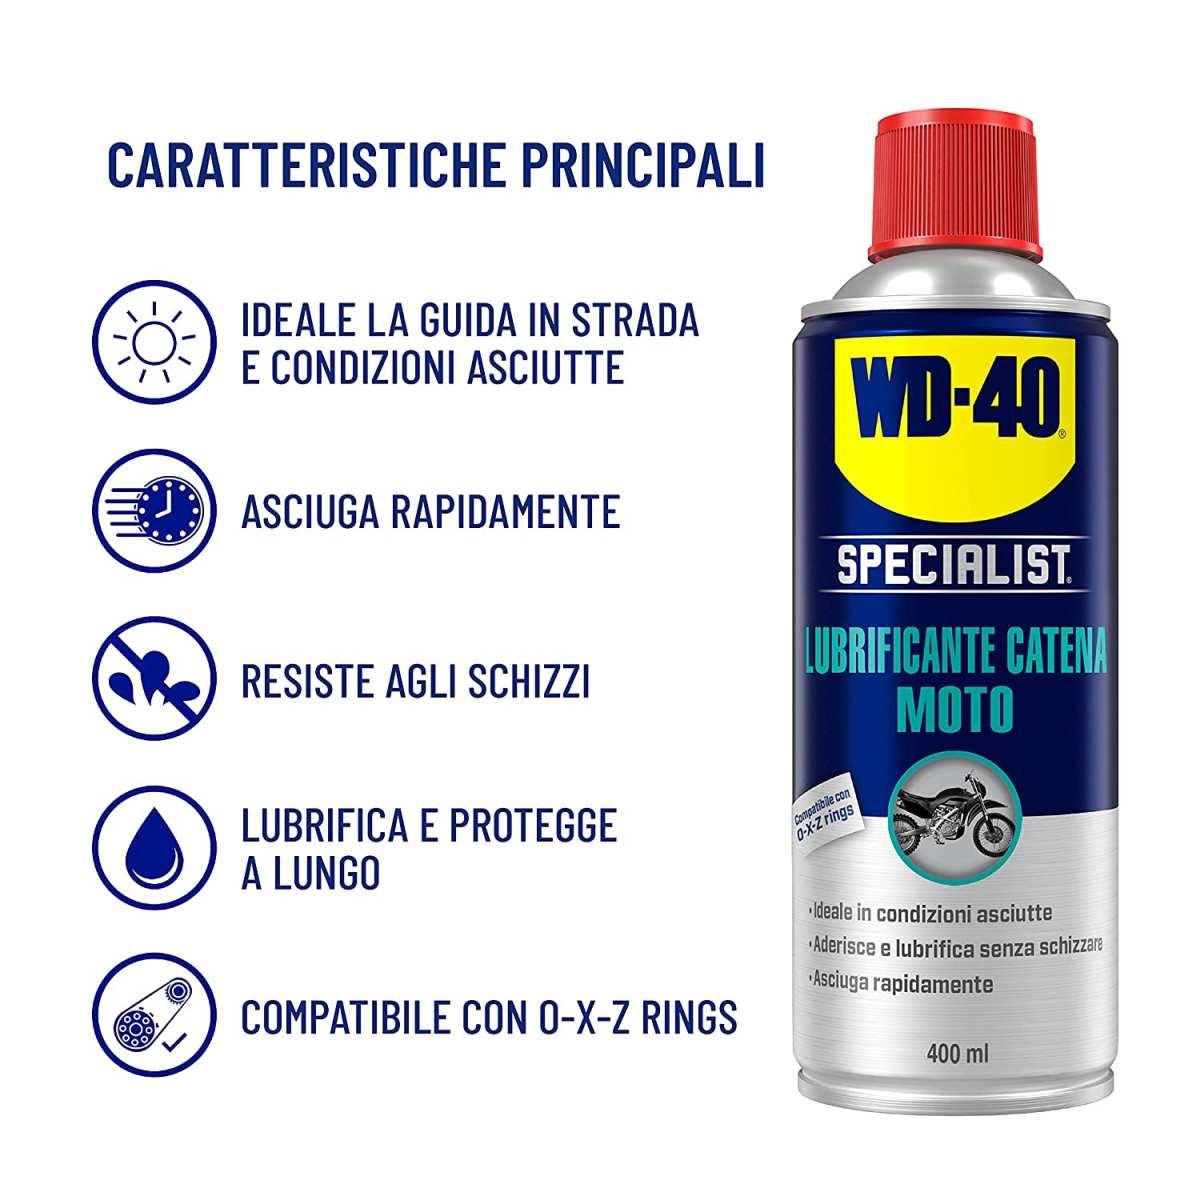 WD-40 Specialist Lubrificante Catena Moto Spray, 400 ml (originale)